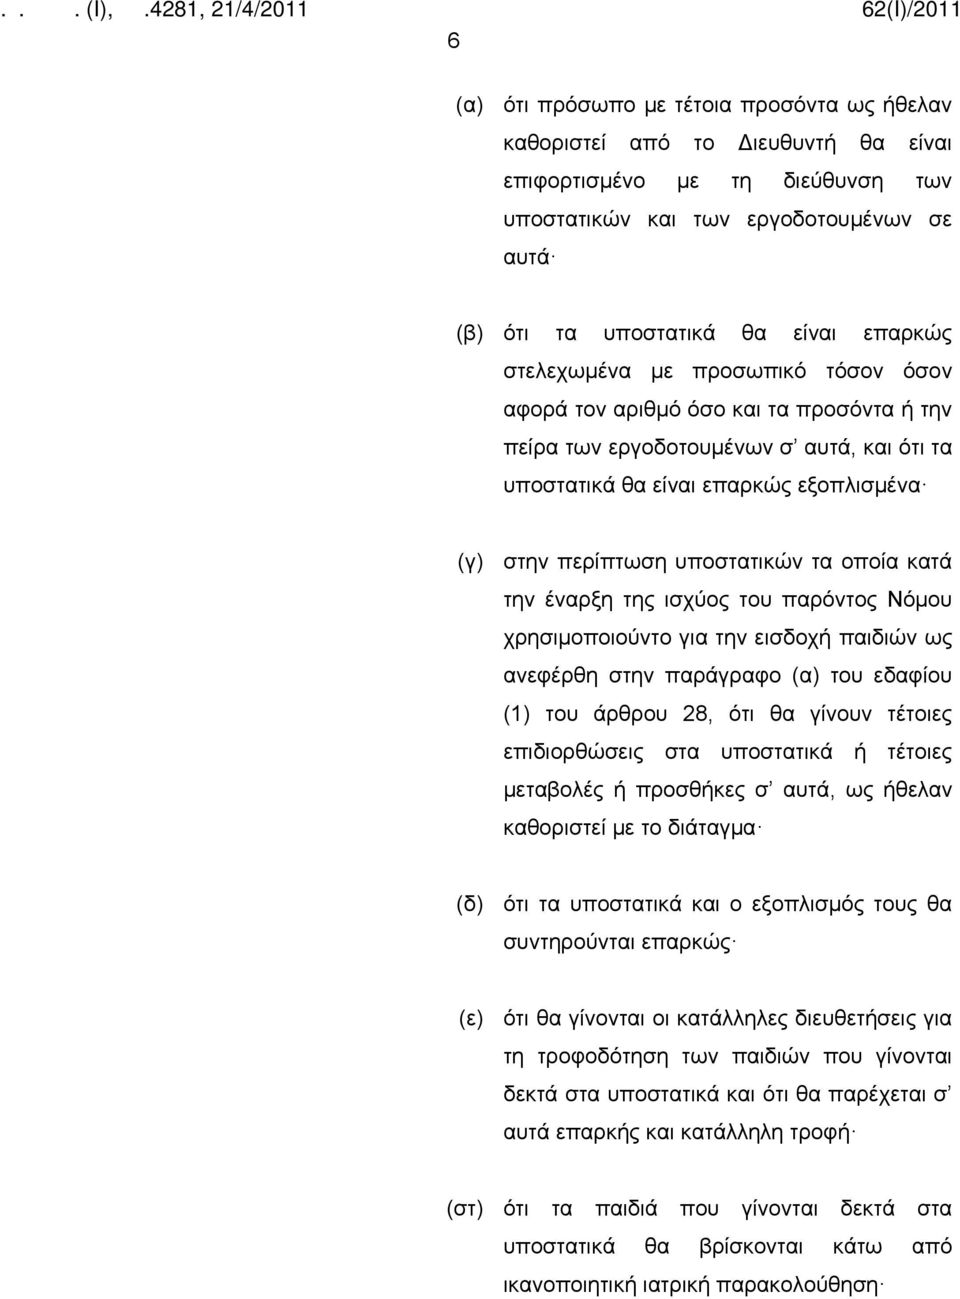 οποία κατά την έναρξη της ισχύος του παρόντος Νόμου χρησιμοποιούντο για την εισδοχή παιδιών ως ανεφέρθη στην παράγραφο (α) του εδαφίου (1) του άρθρου 28, ότι θα γίνουν τέτοιες επιδιορθώσεις στα